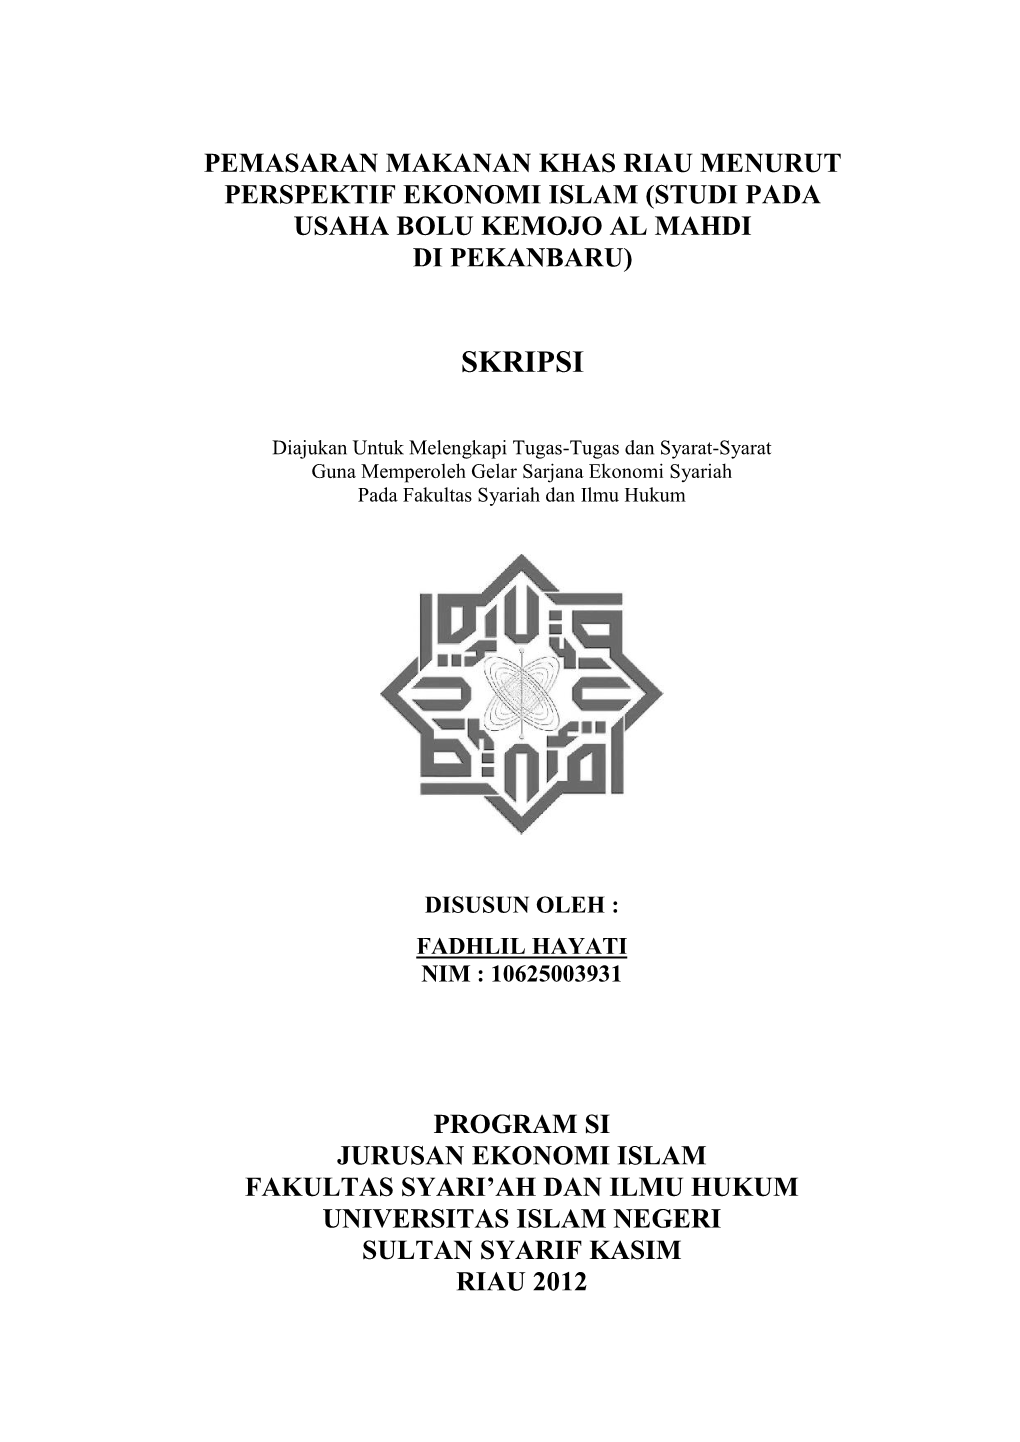 Studi Pada Usaha Bolu Kemojo Al Mahdi Di Pekanbaru)